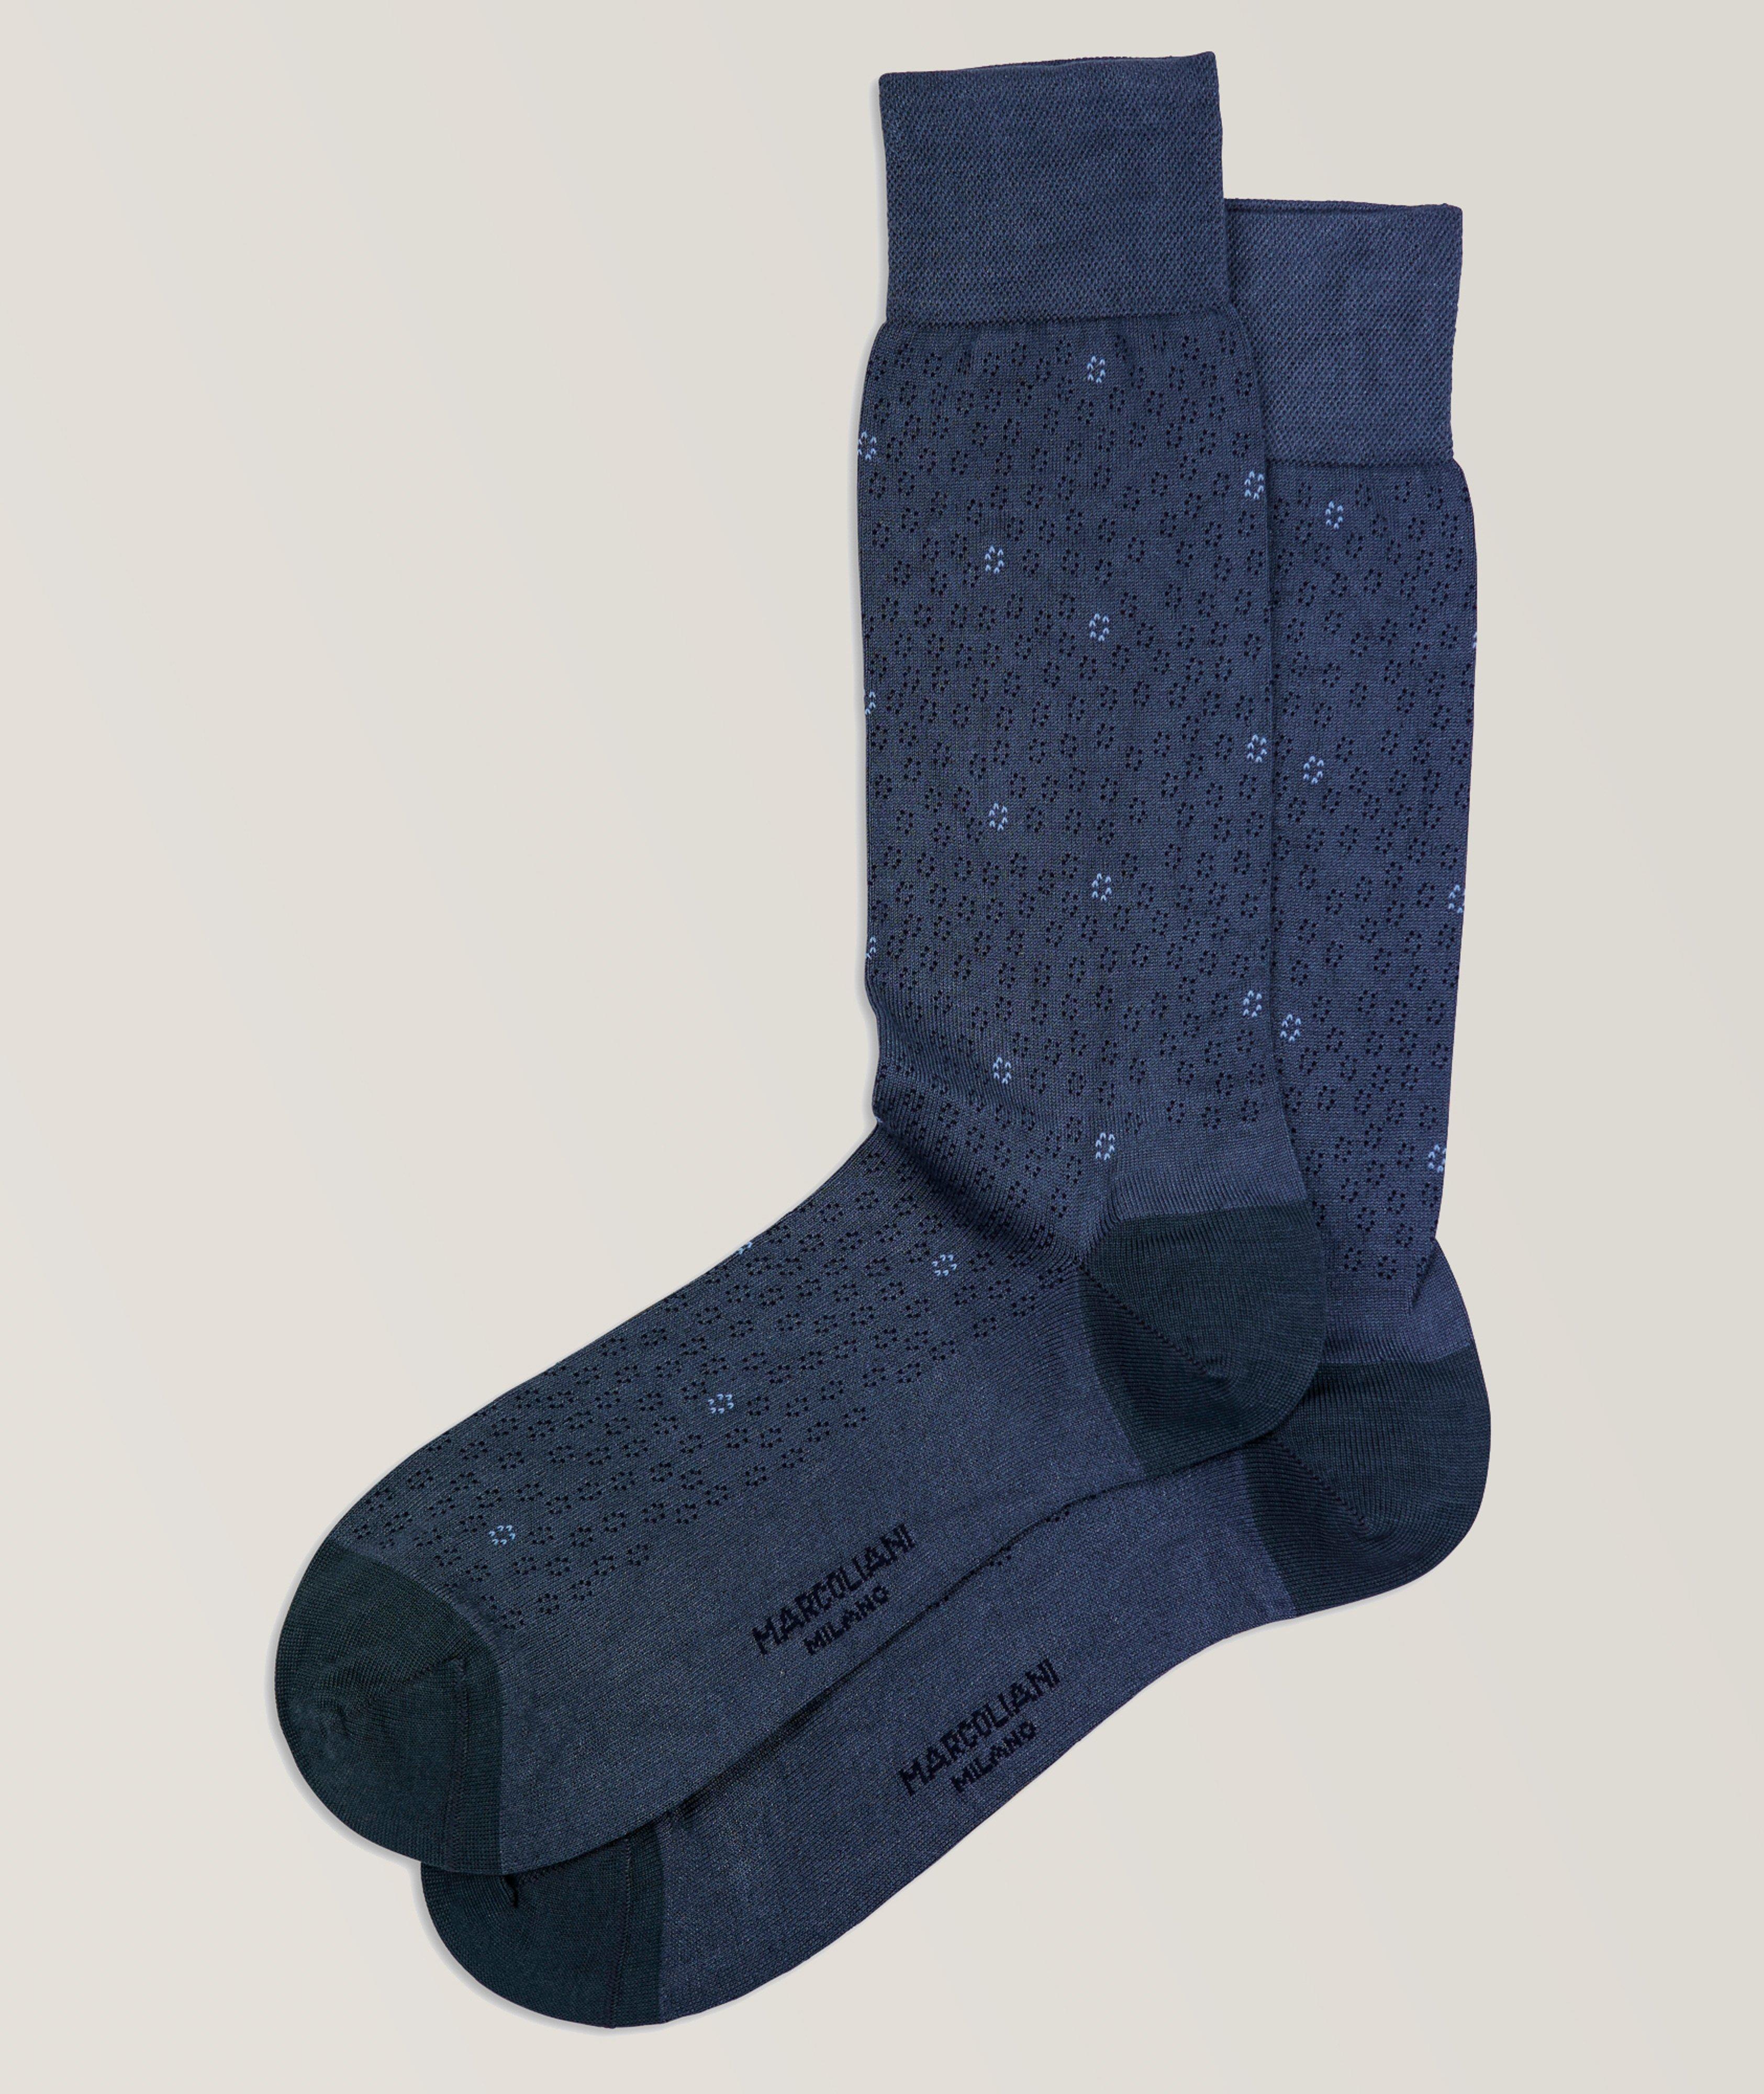 S24 Modal-Blend Dress Socks image 0